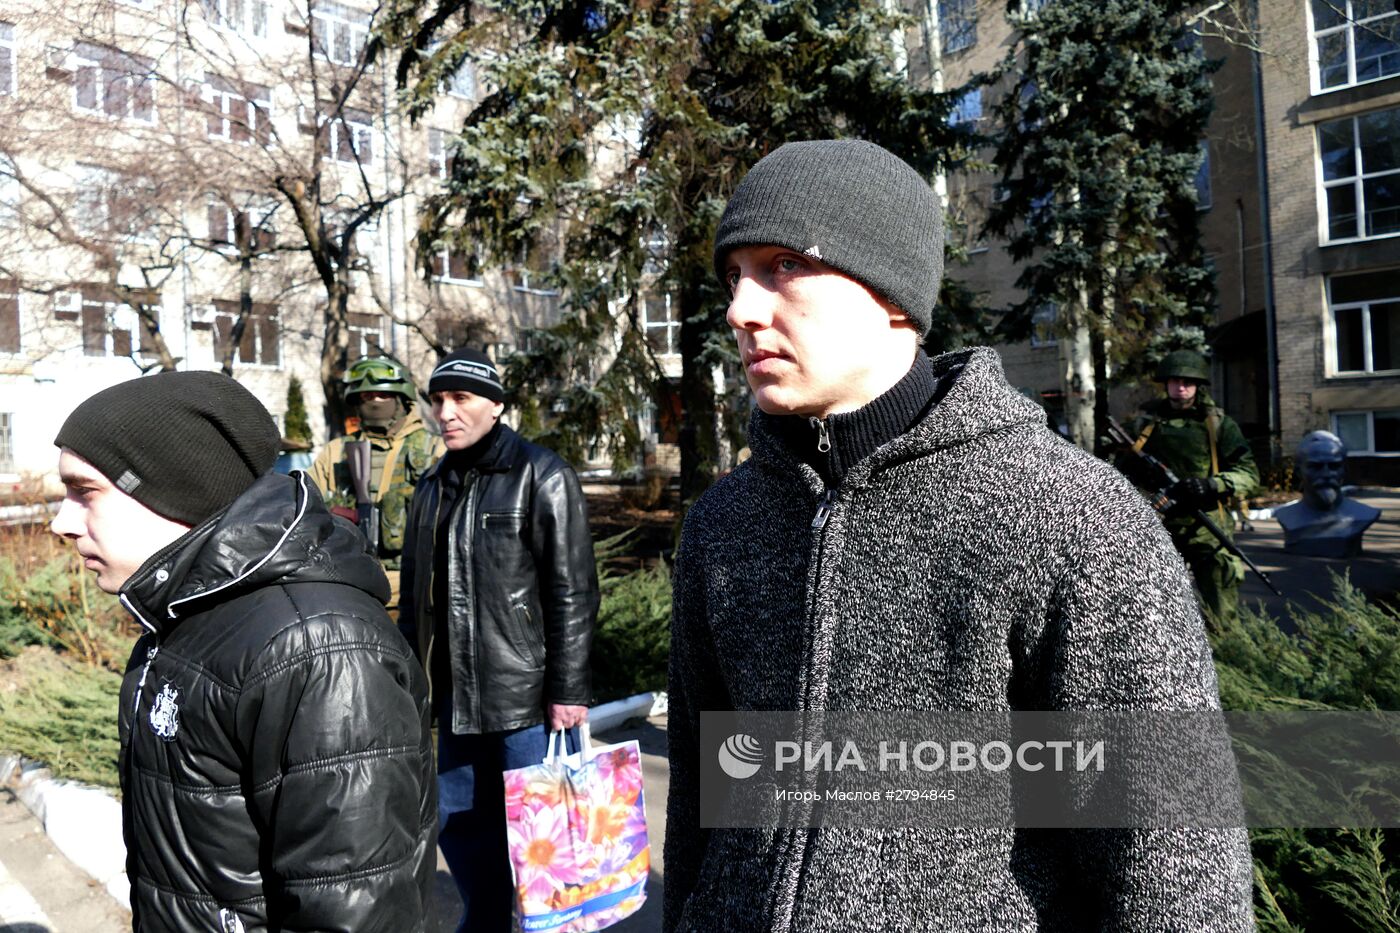 Обмен пленными между ДНР и Киевом по формуле "три на шесть"